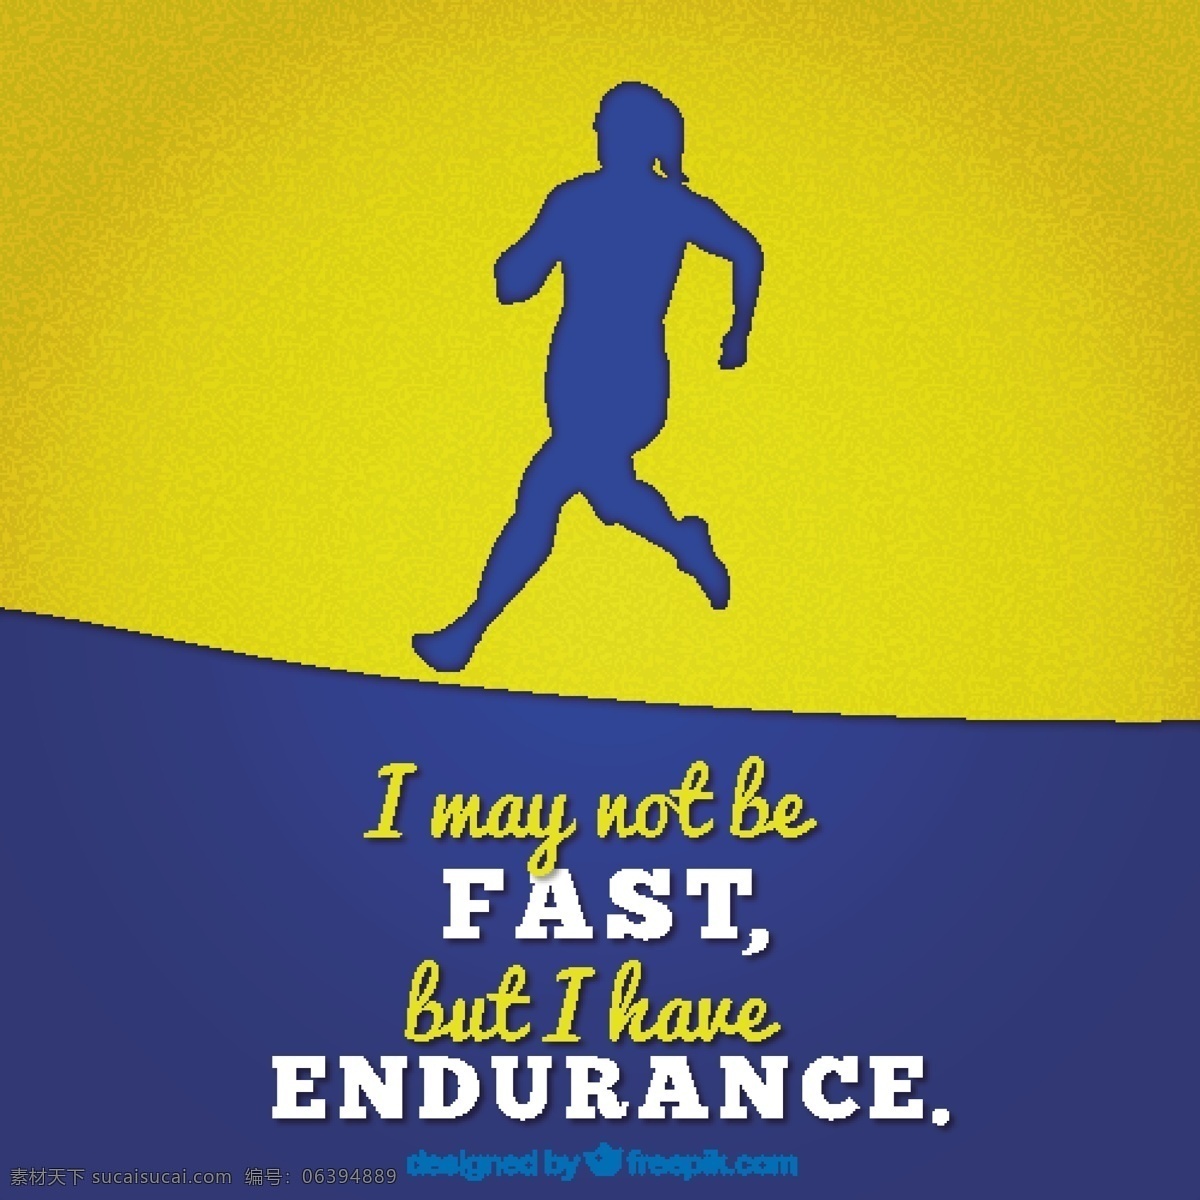 跑步 剪影 蓝色 黄色 背景 励志 短语 跑步者剪影 蓝色黄色背景 励志短语